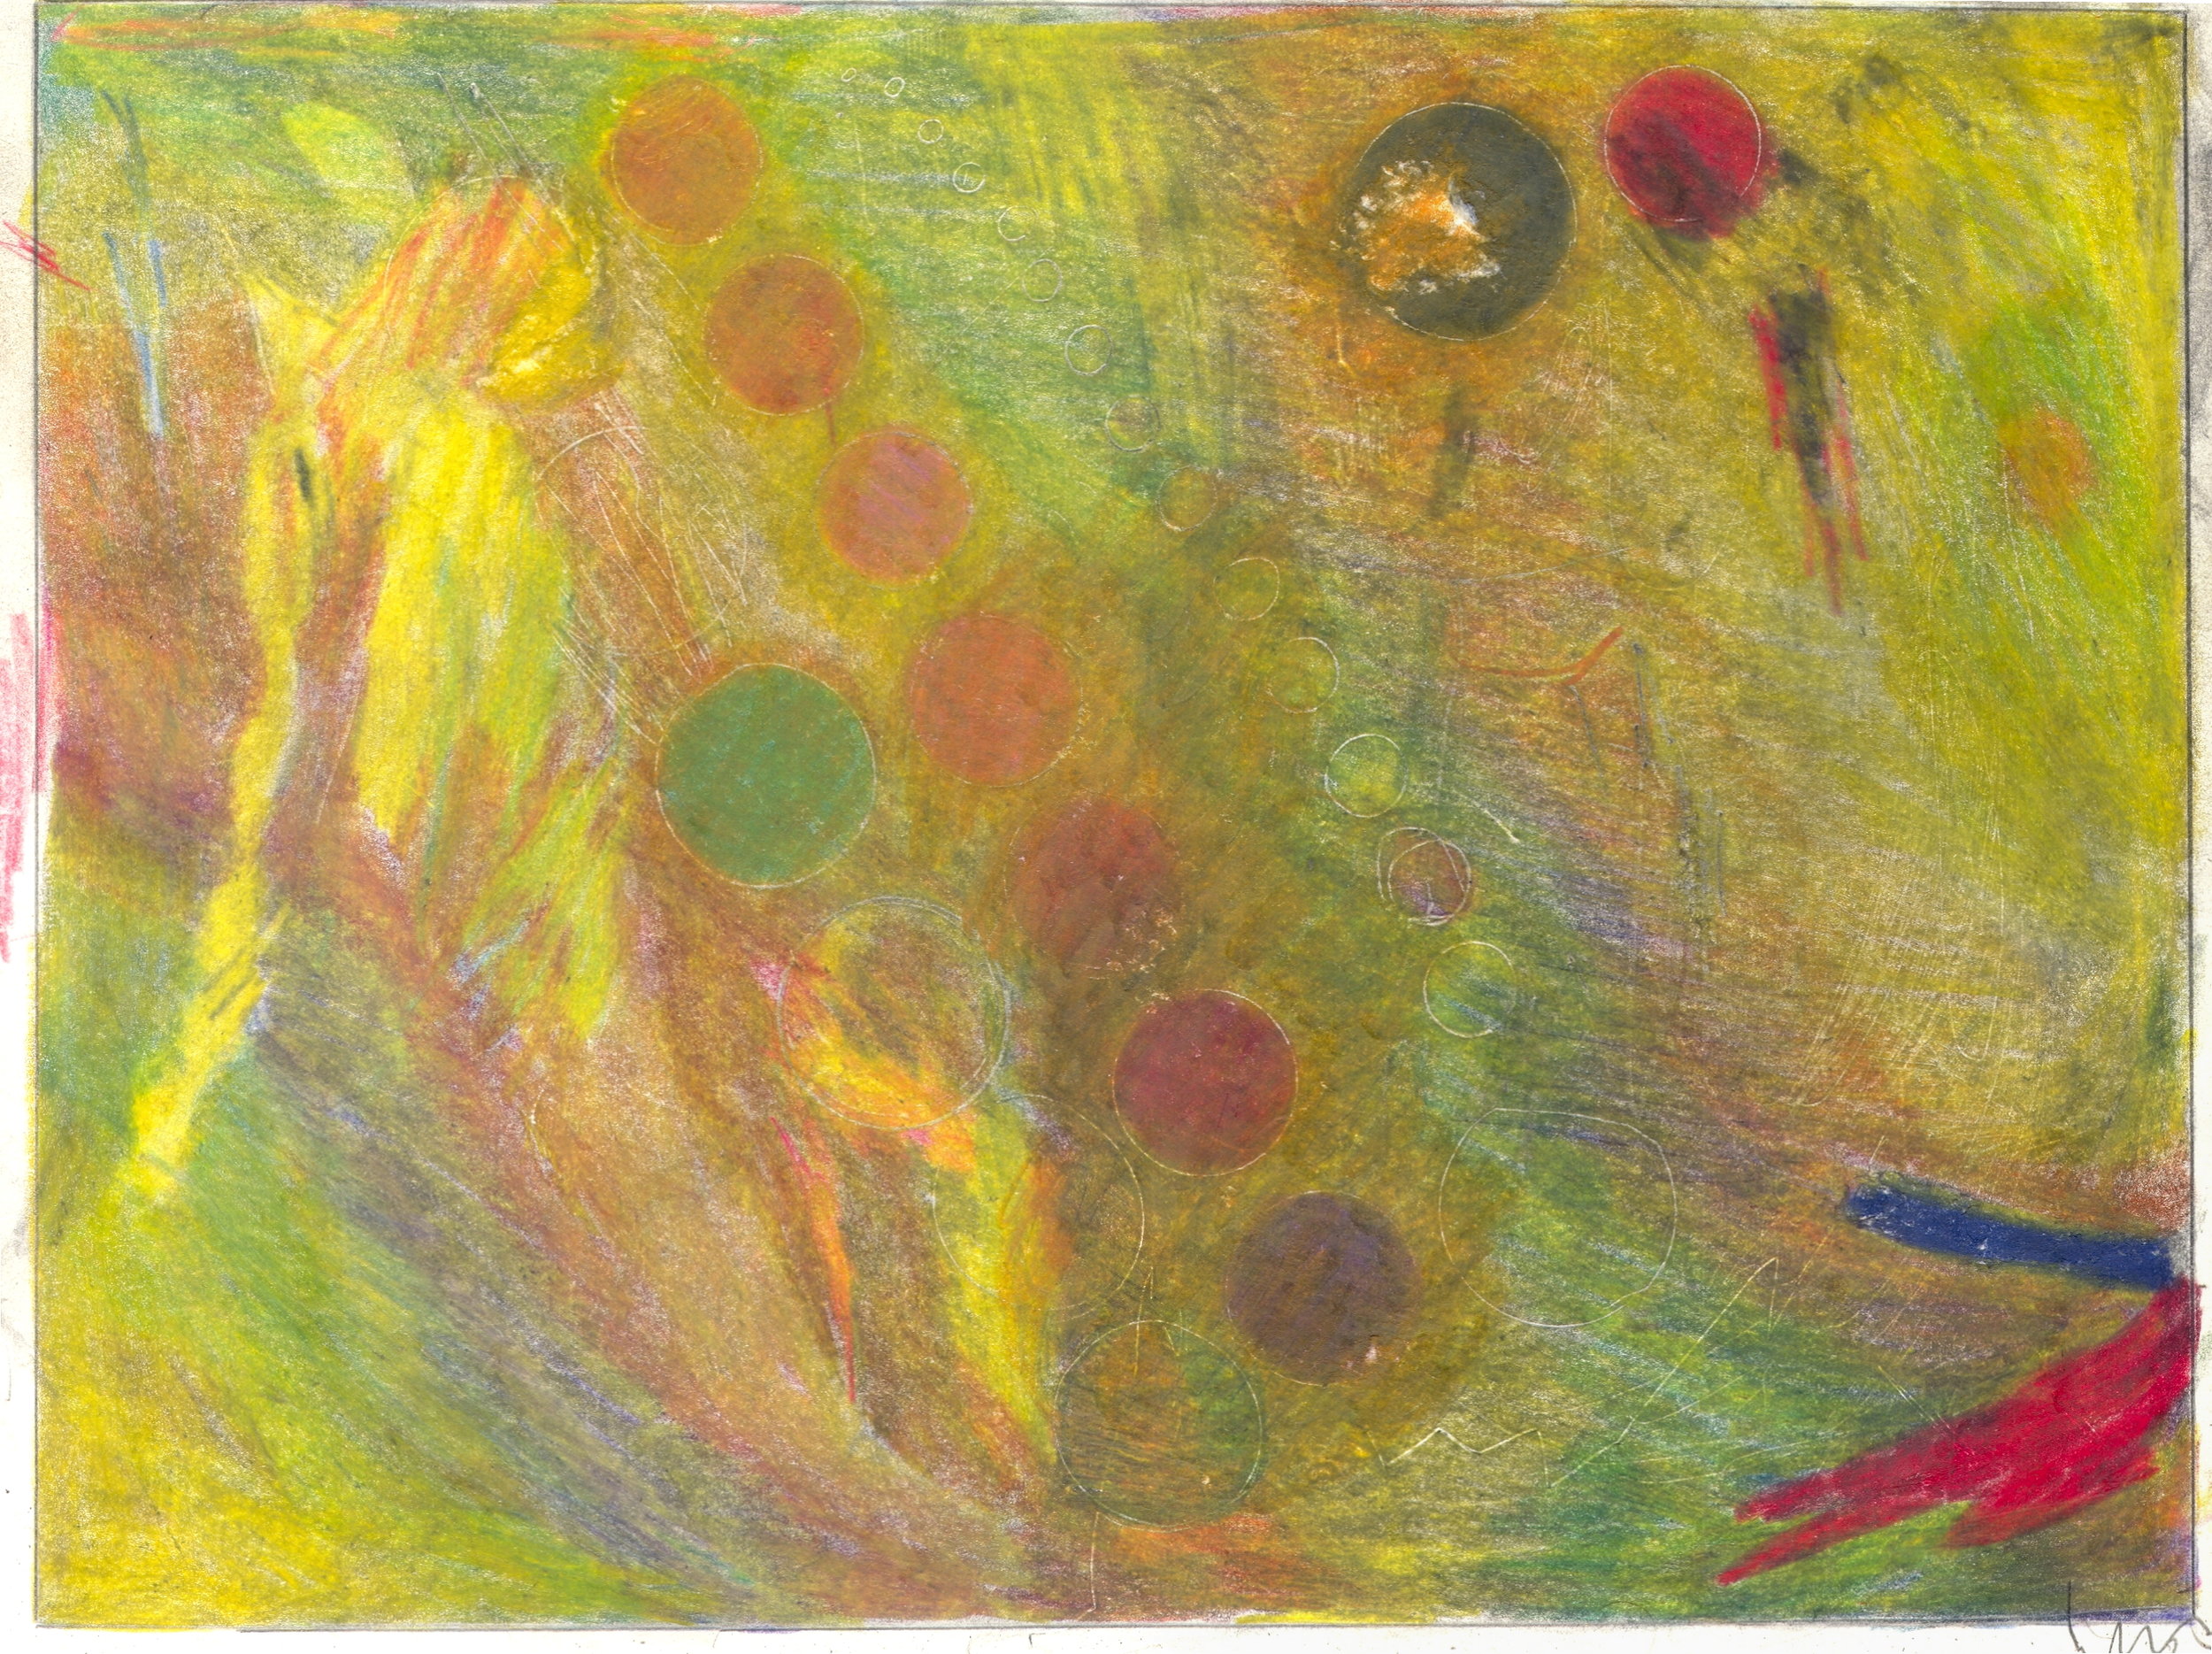  O.T. ( Abstratktion gelb ), 2018  Bleistift Buntstift auf Papier, 26x35.5cm 